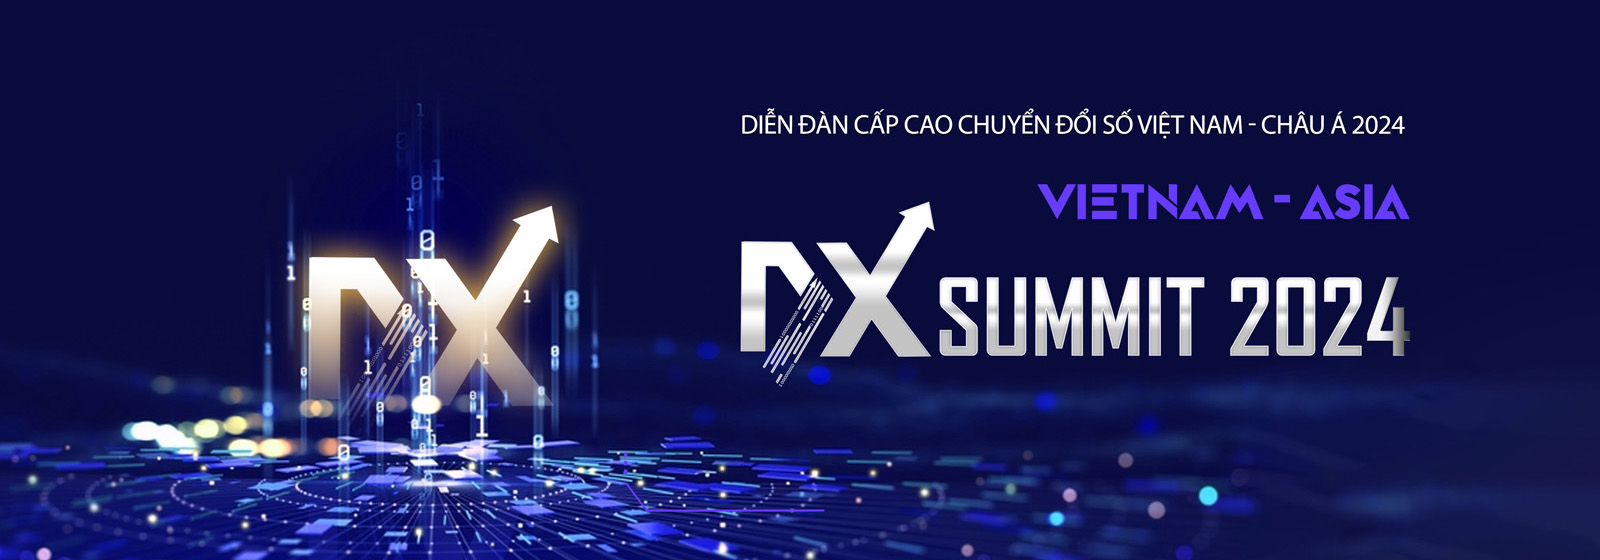 Vietnam - ASIA DX Summit 2024